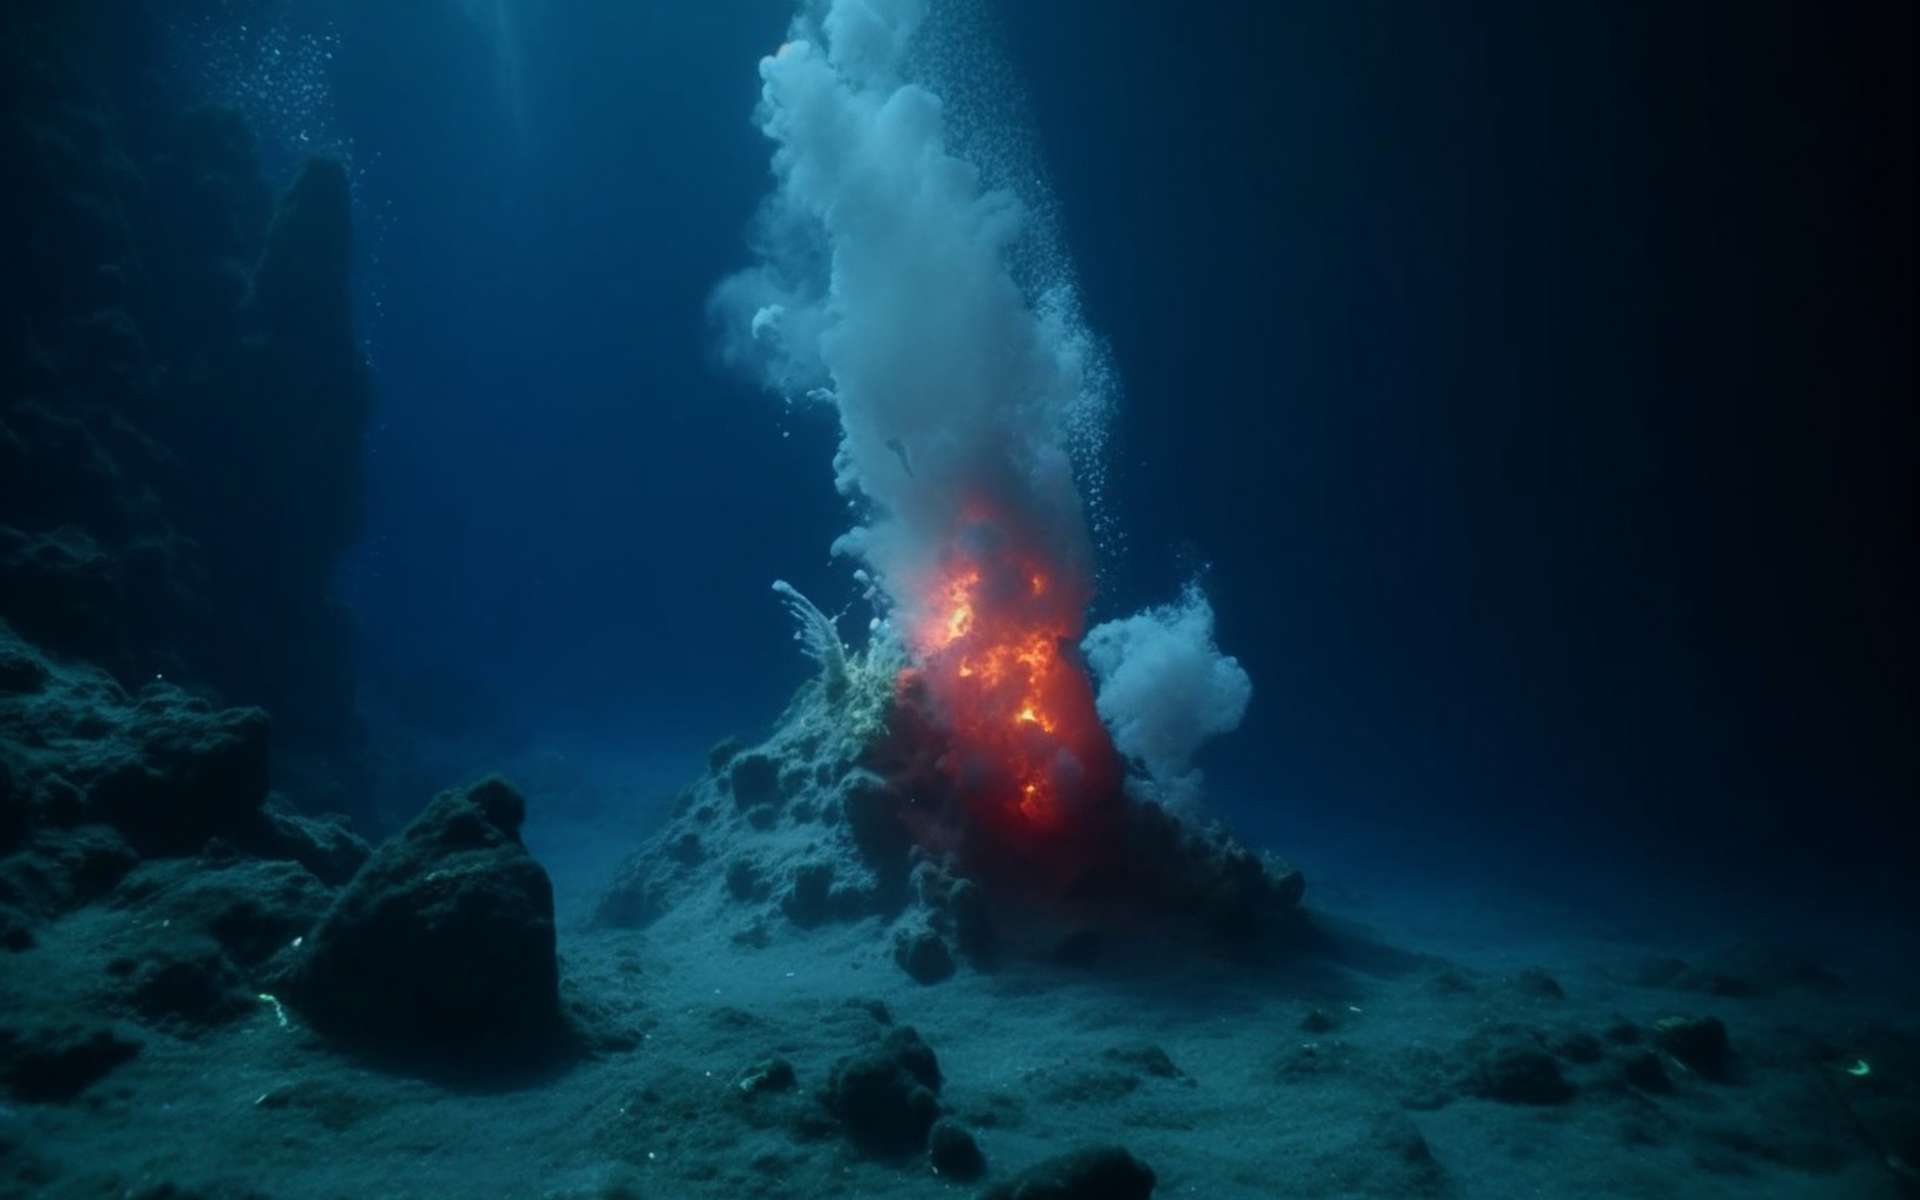 Ces petits volcans sous-marins pourraient cracher d'importantes quantités de méthane